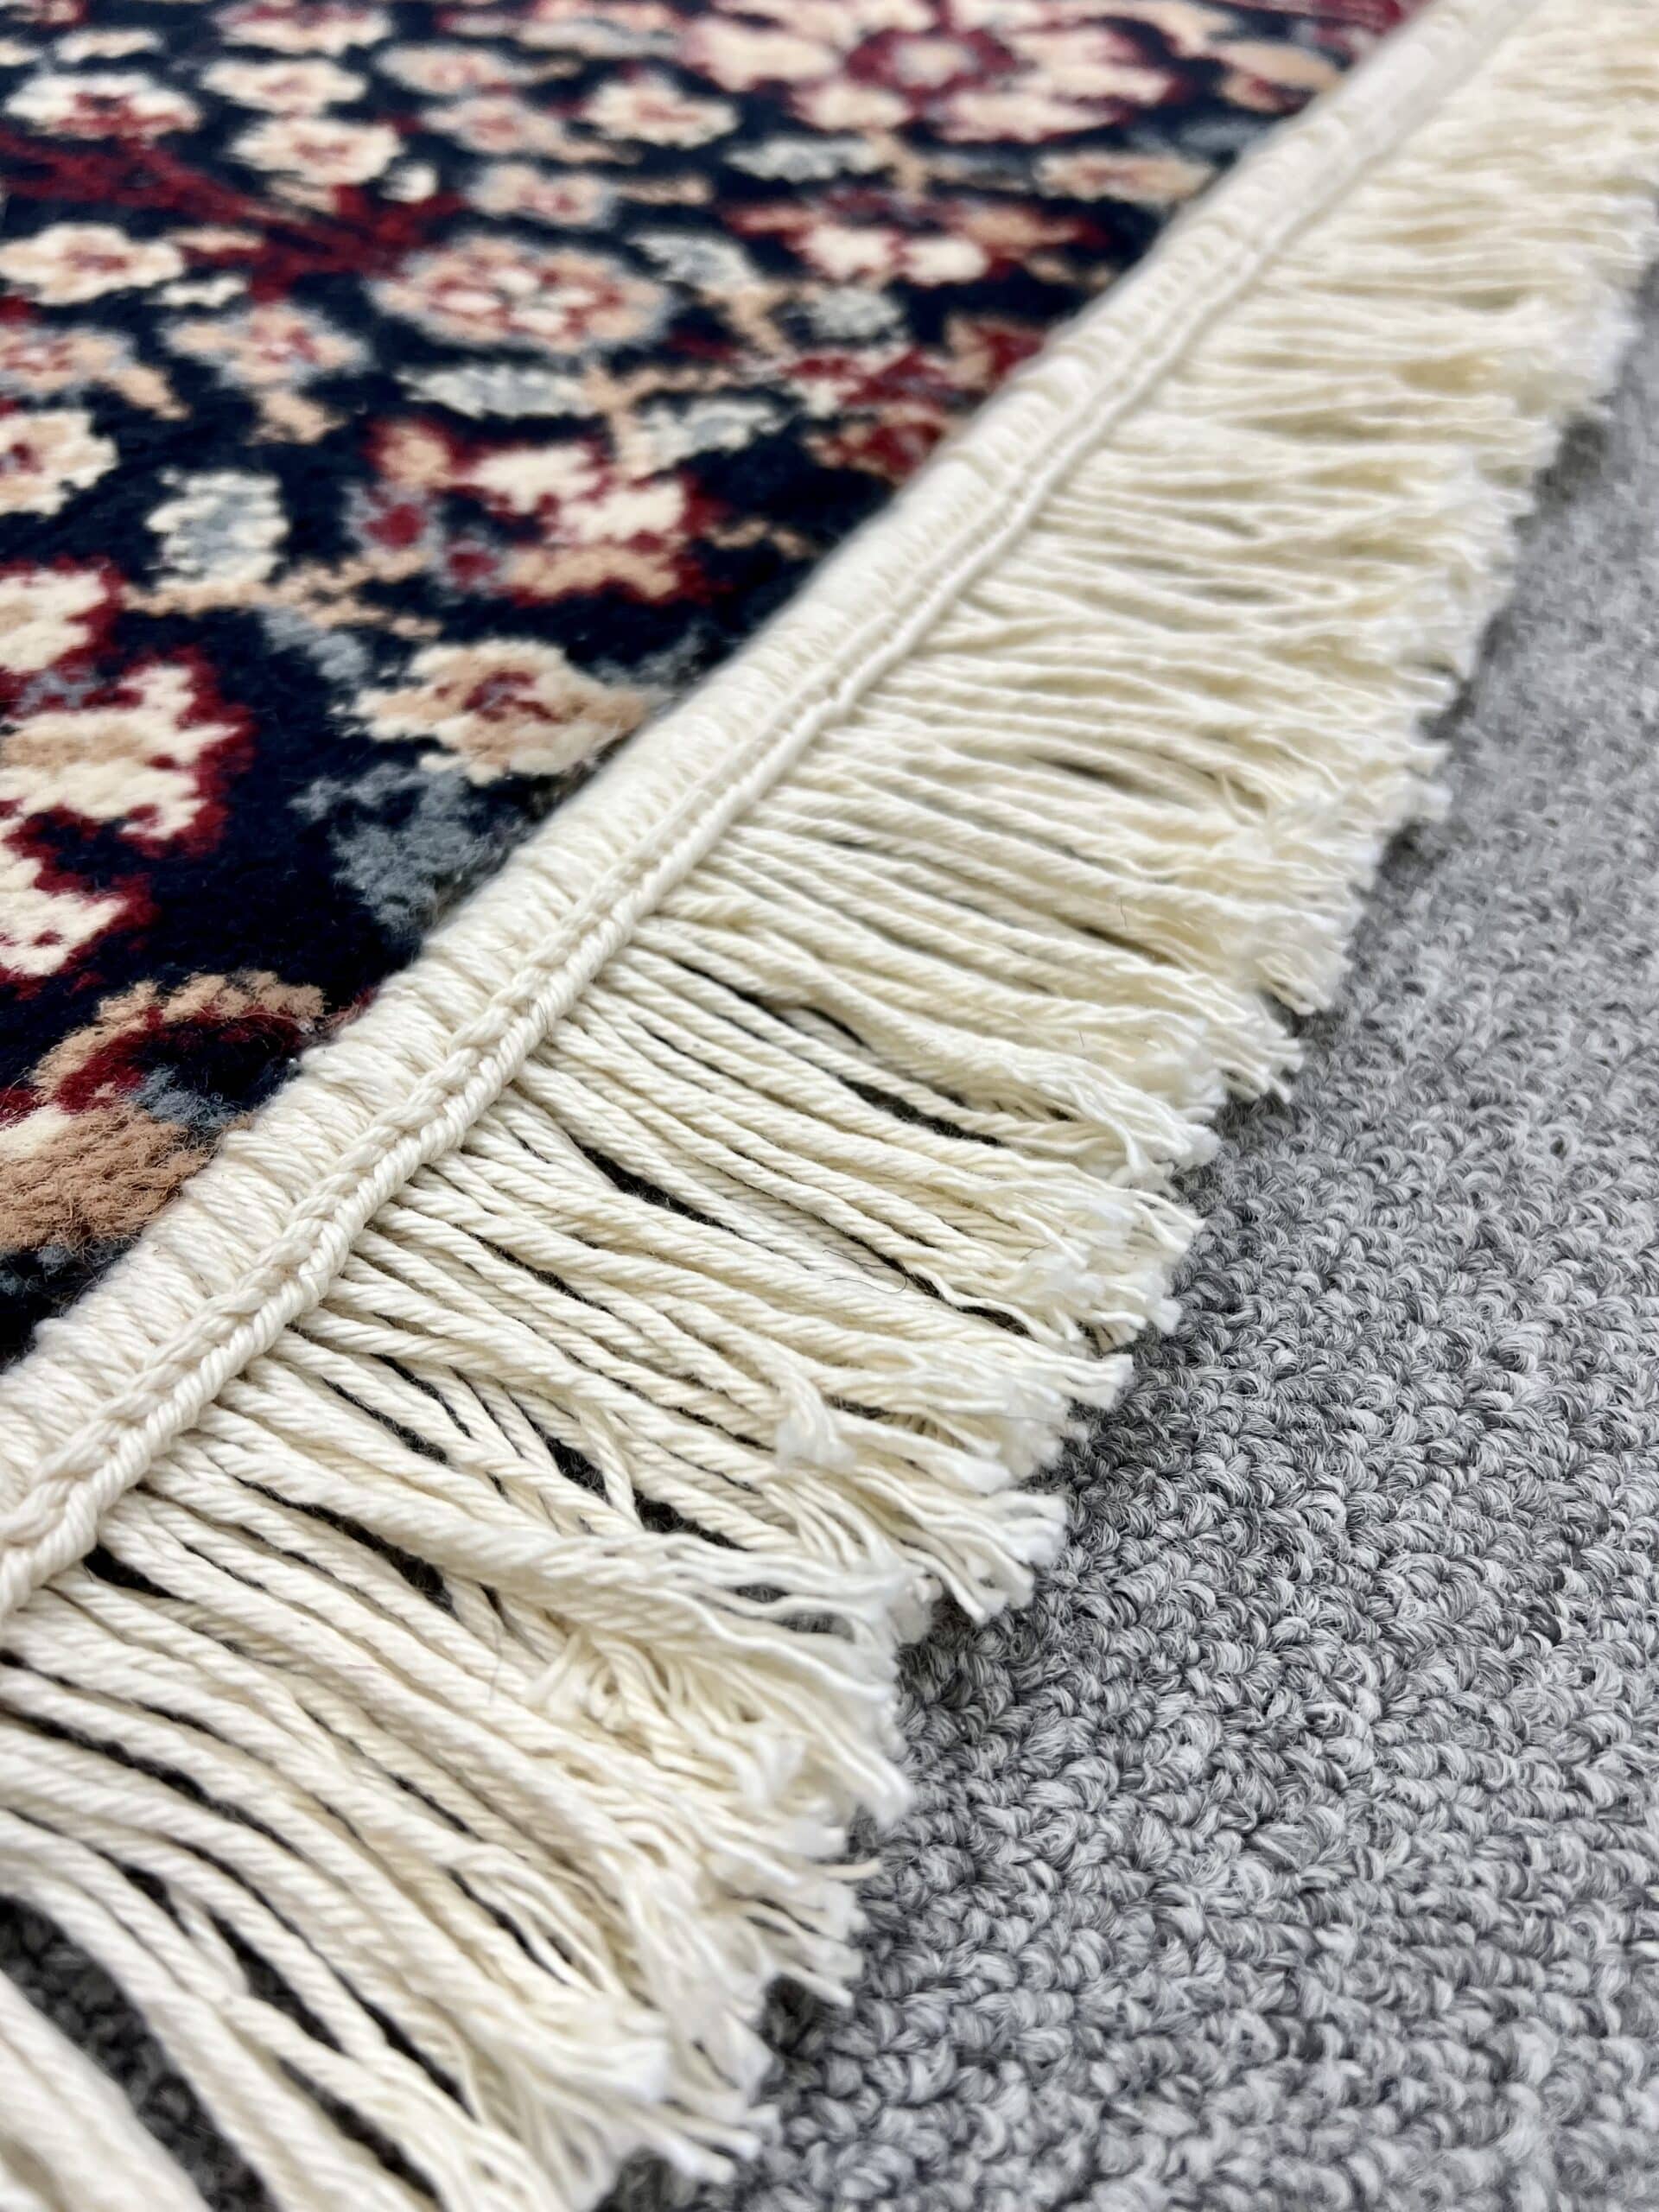 Navy Instabind Carpet Edging Tape - Bind Carpet At Home